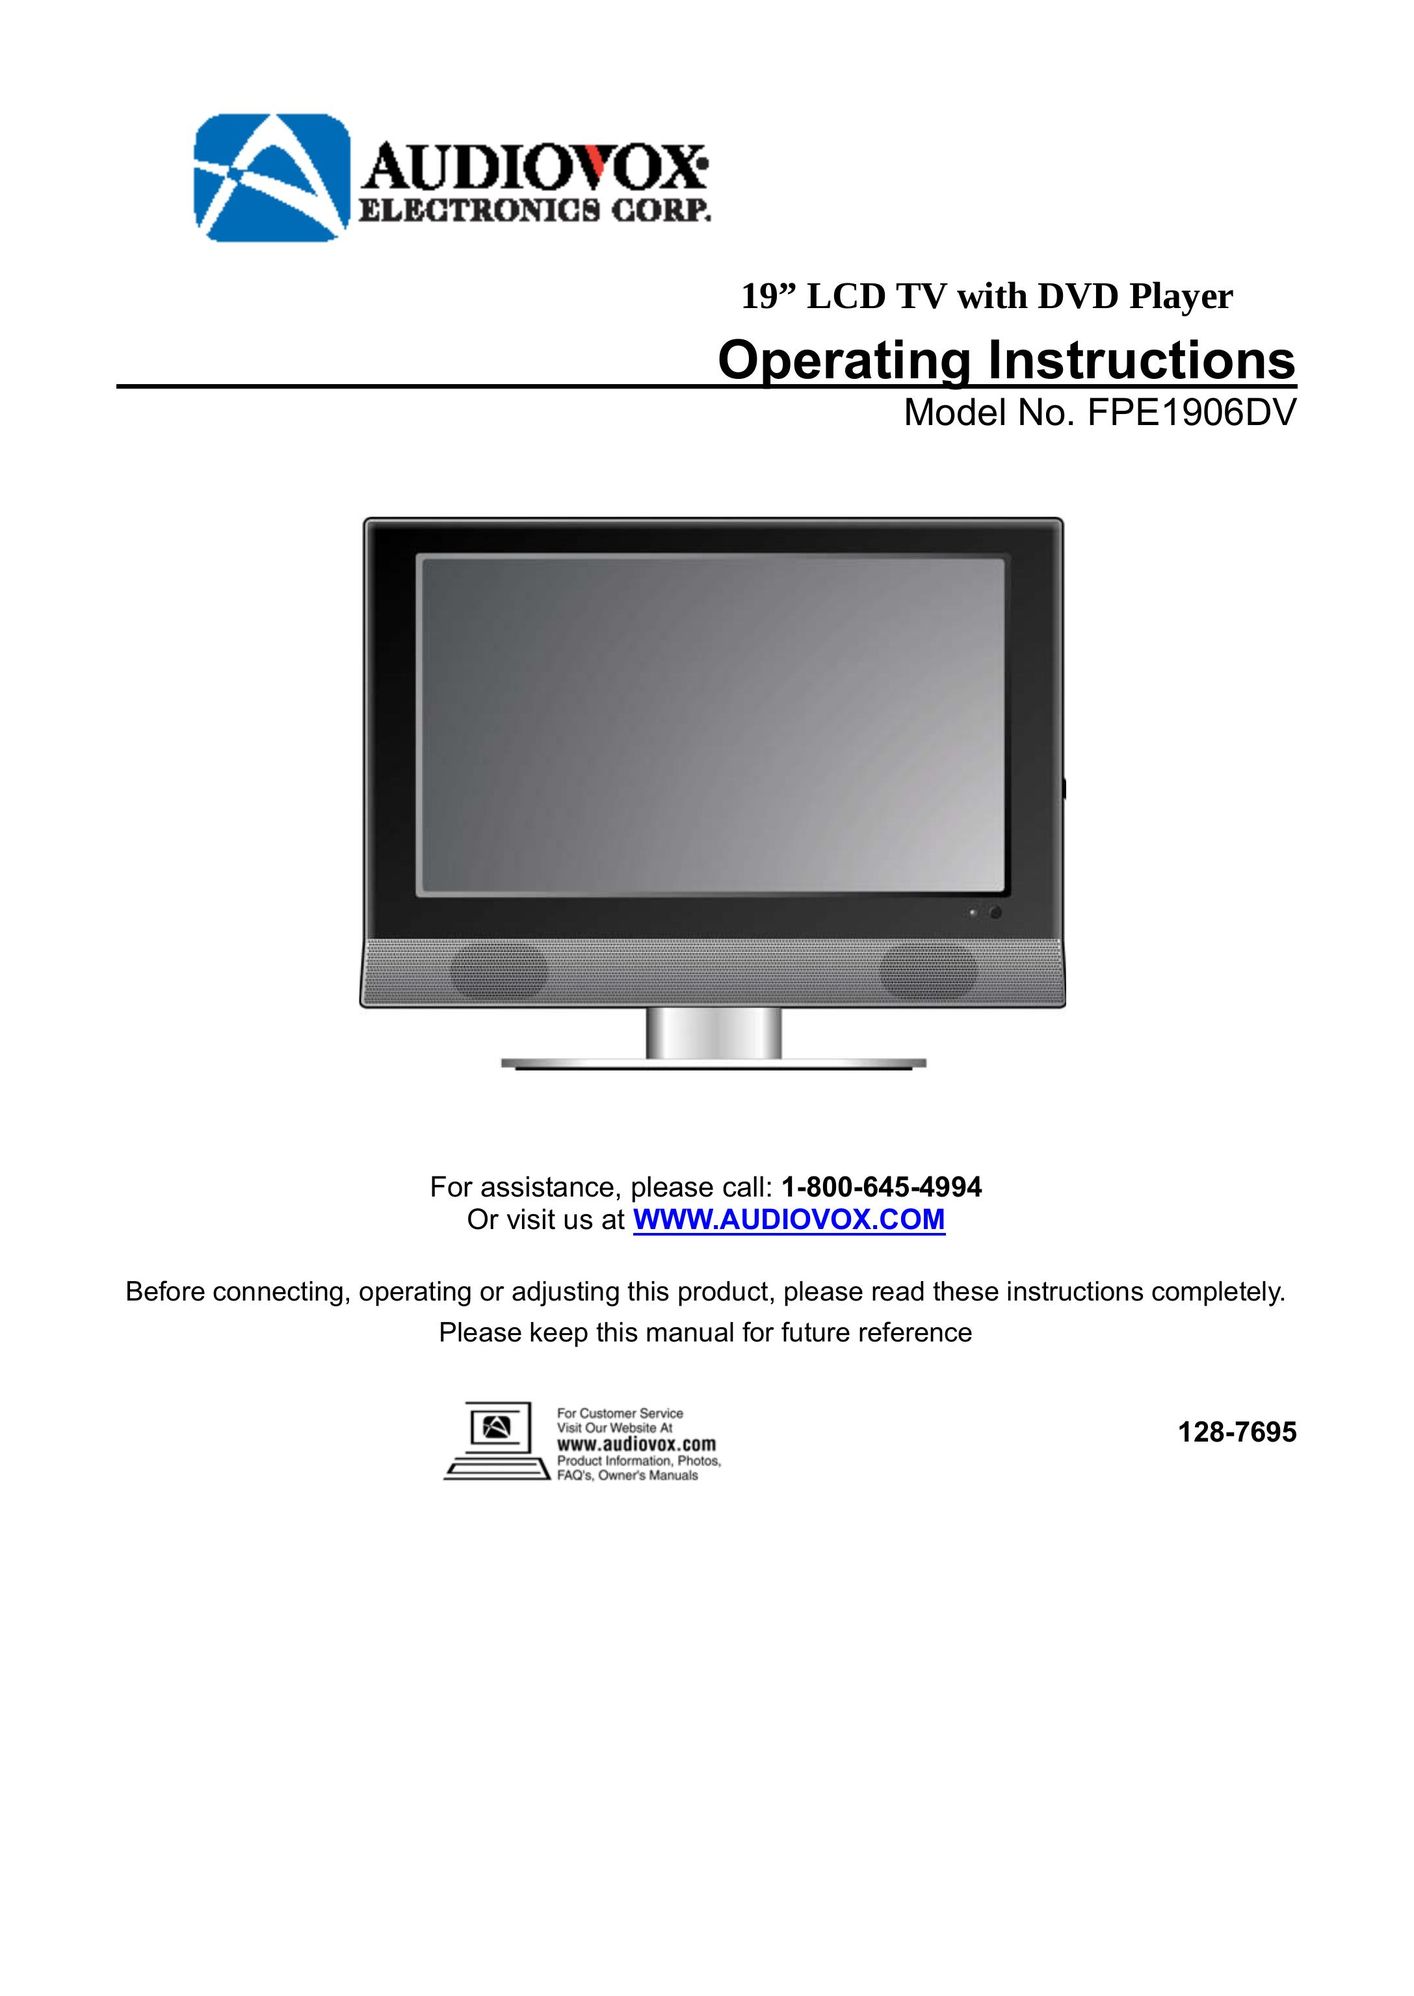 Audiovox FPE1906DV DVD Player User Manual